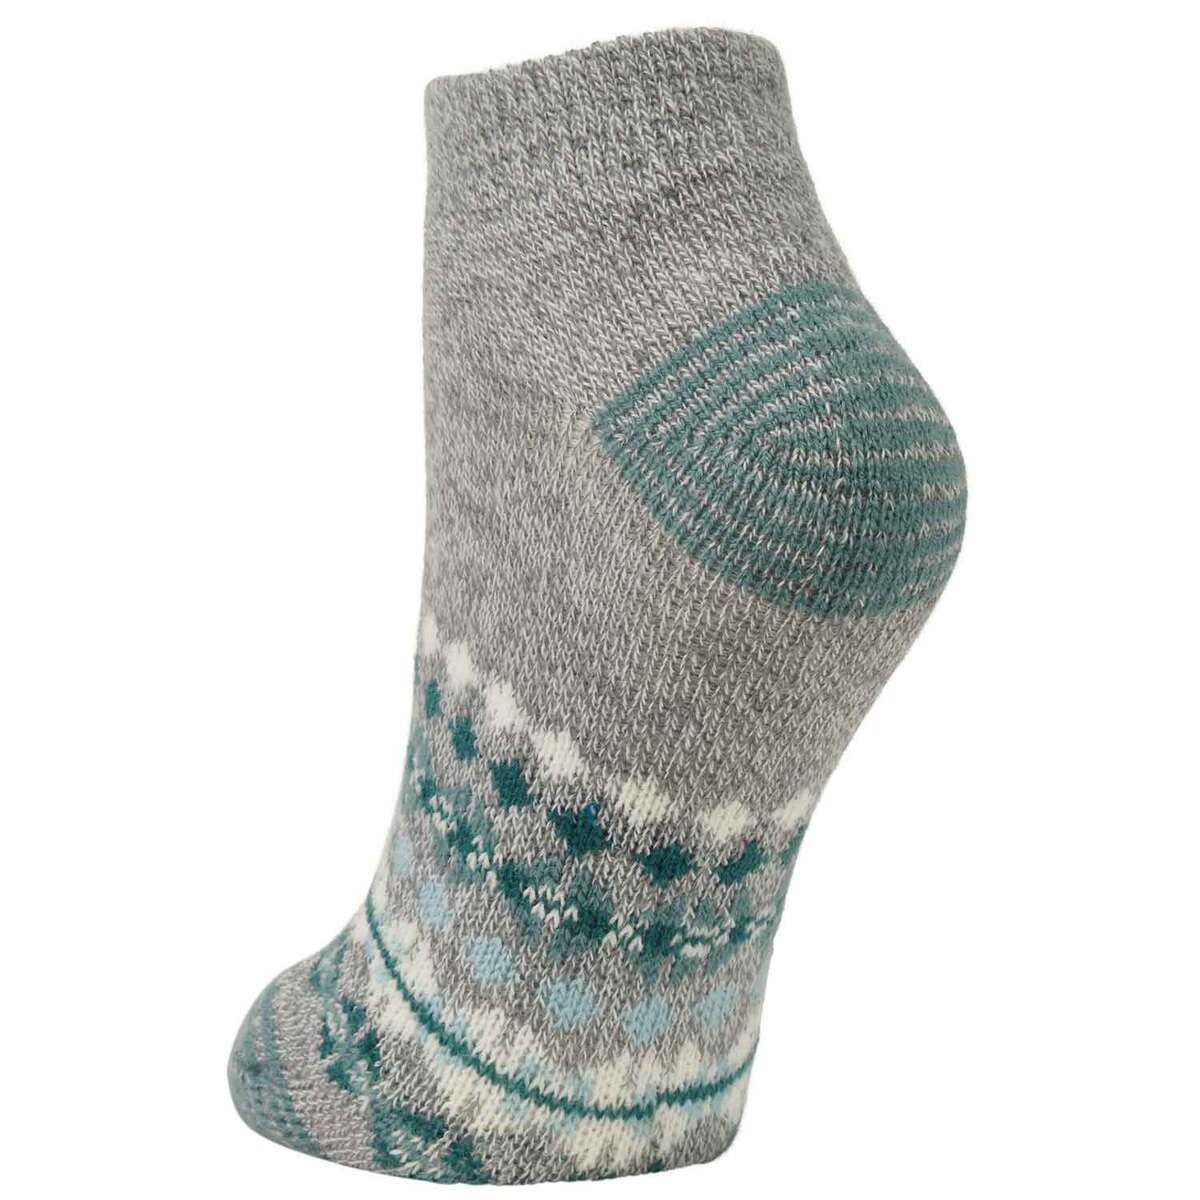 Sof Sole Women's Fireside Nordic Low Mini Casual Socks - Marlin Blue ...